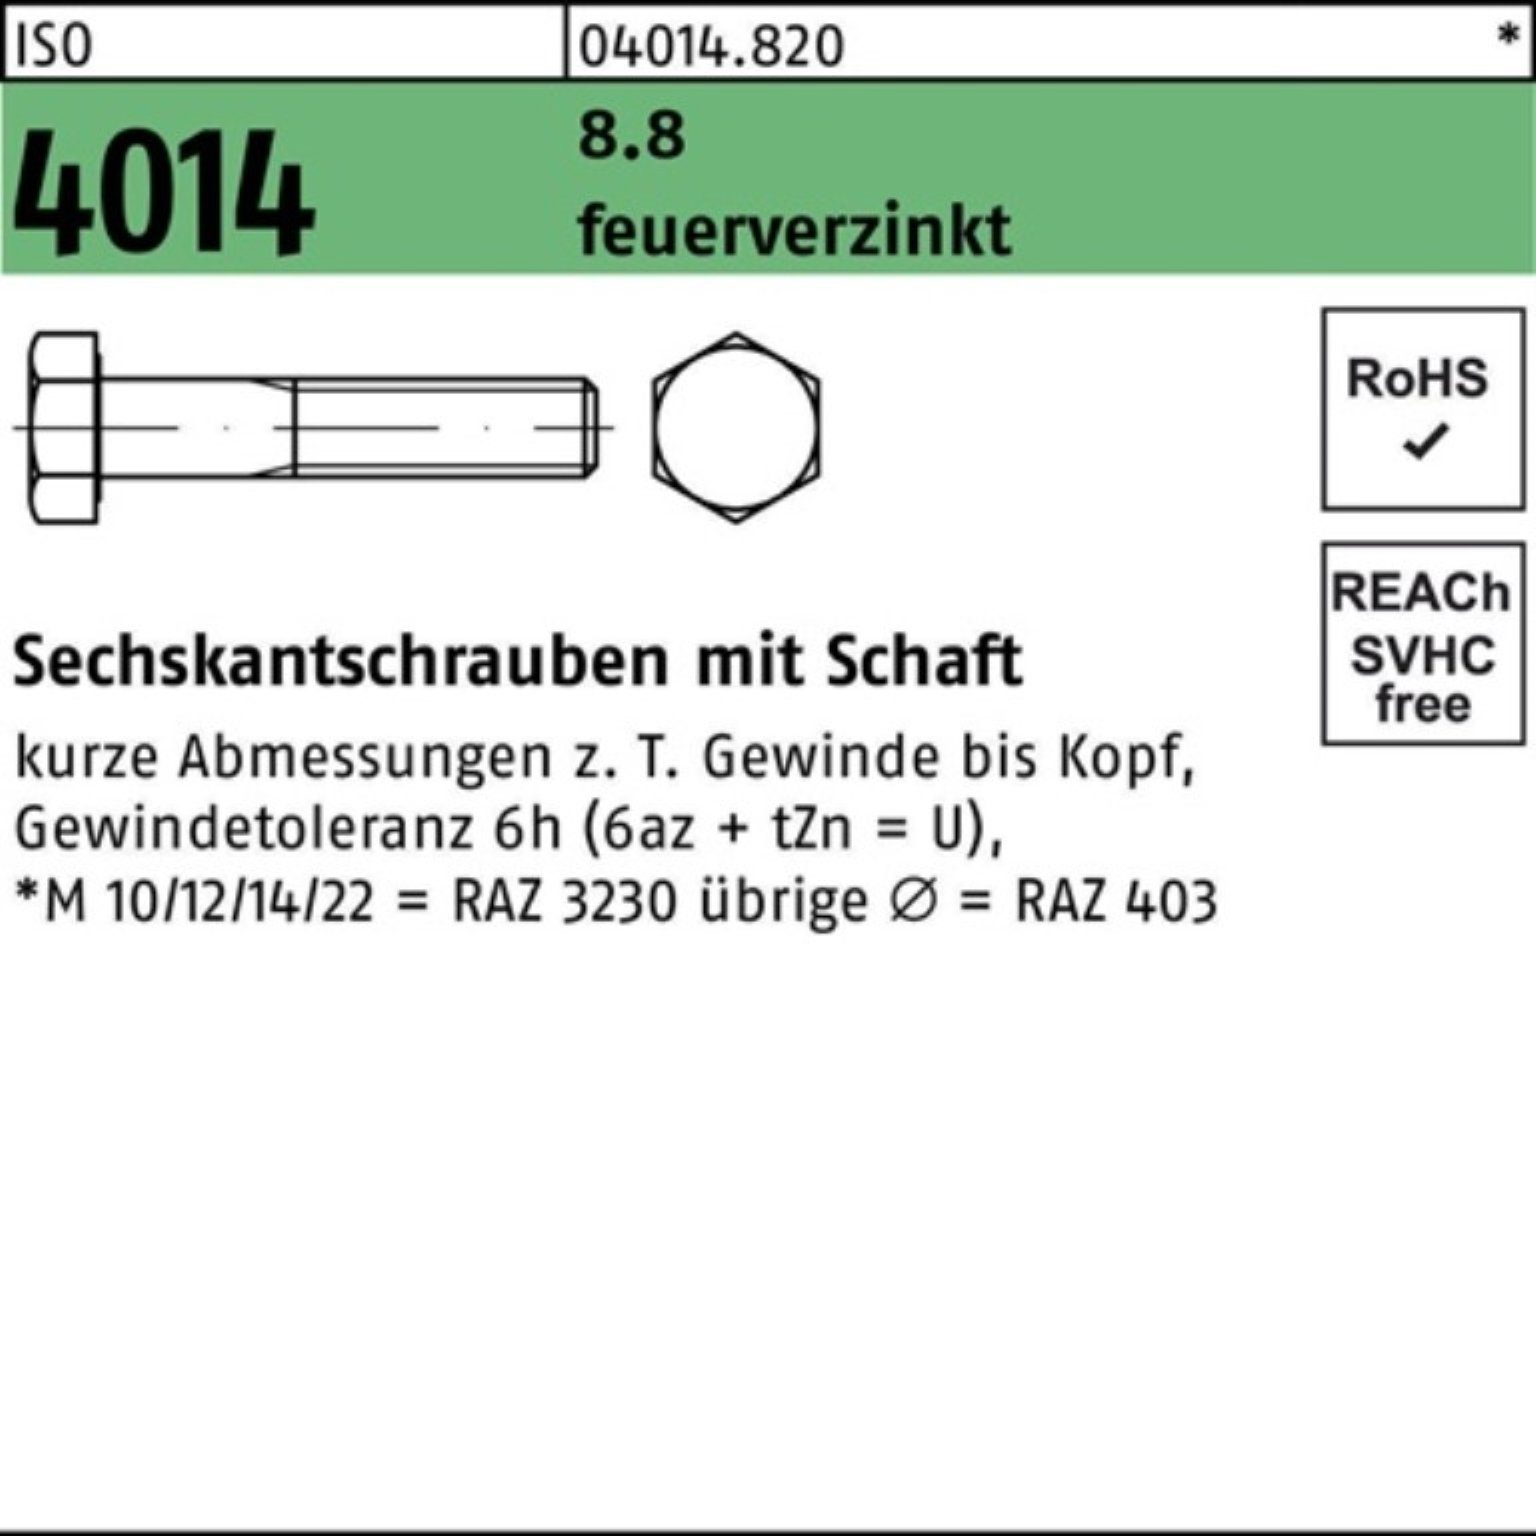 Bufab Sechskantschraube 100er Pack Sechskantschraube ISO 4014 Schaft M10x 55 8.8 feuerverz. 10